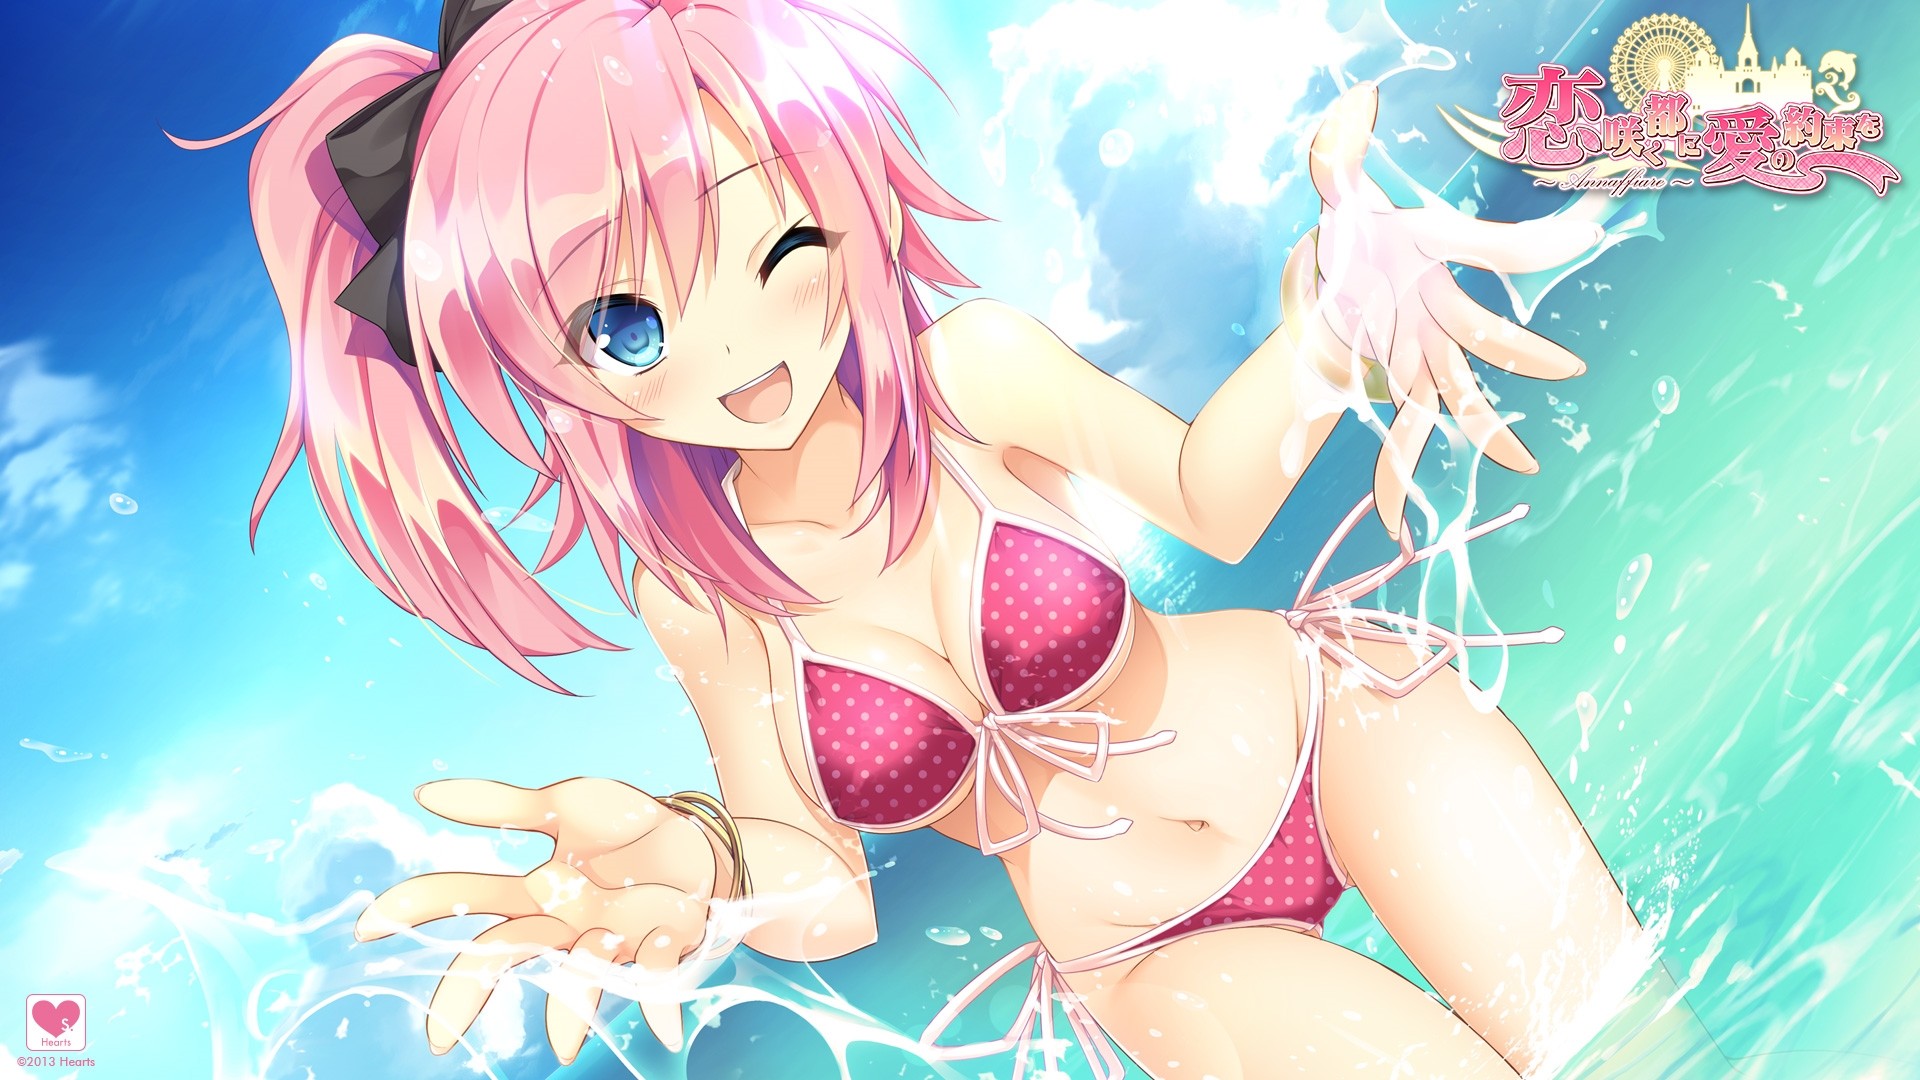 Anime Bikini download free wallpaper for pc in hd